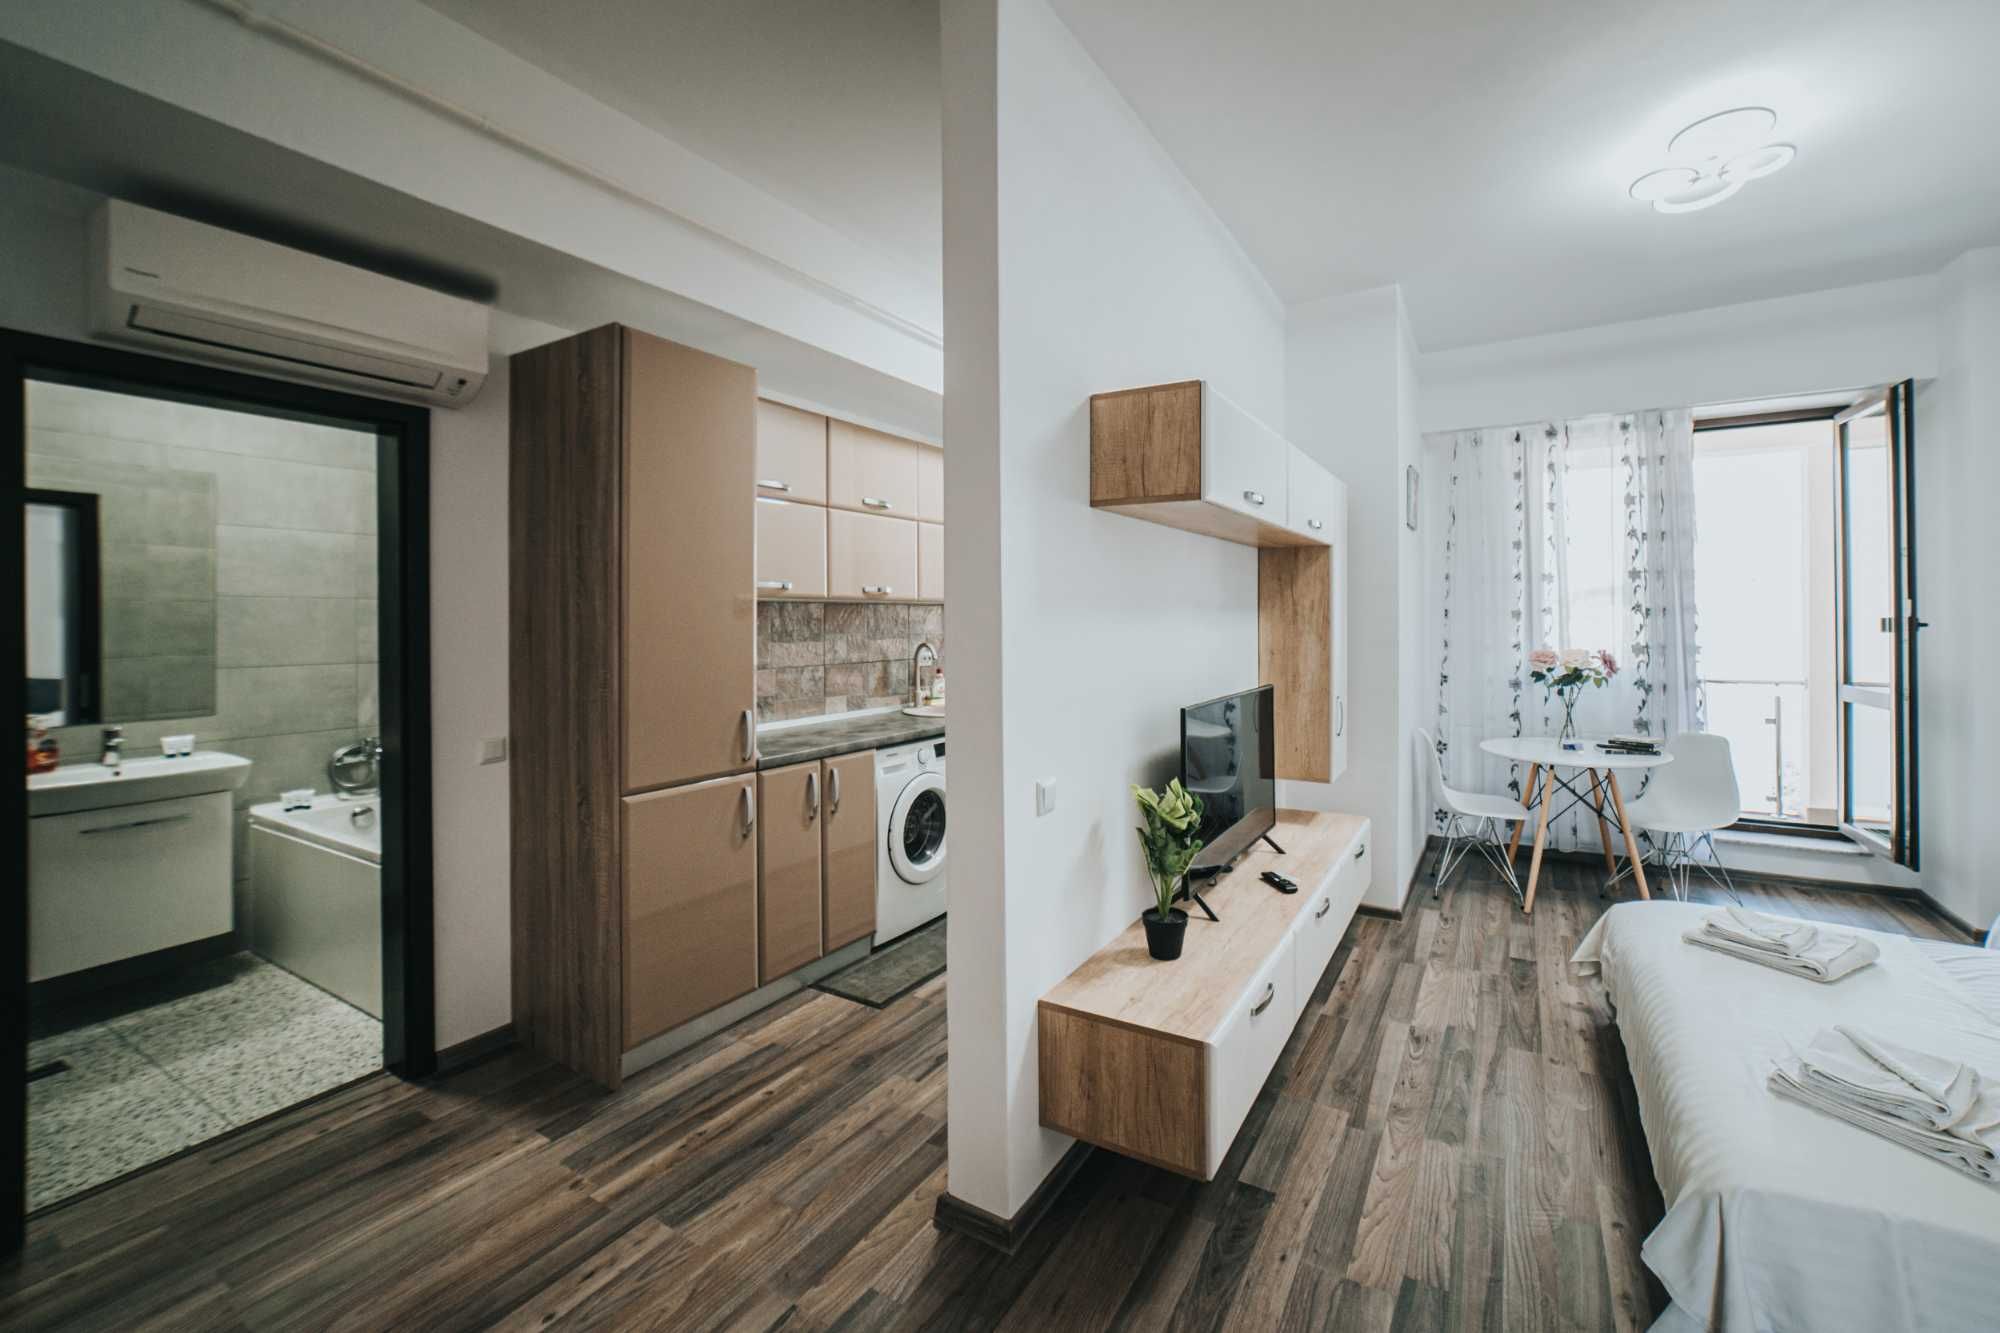 Cozy Apartments in Regim Hotelier Suceava